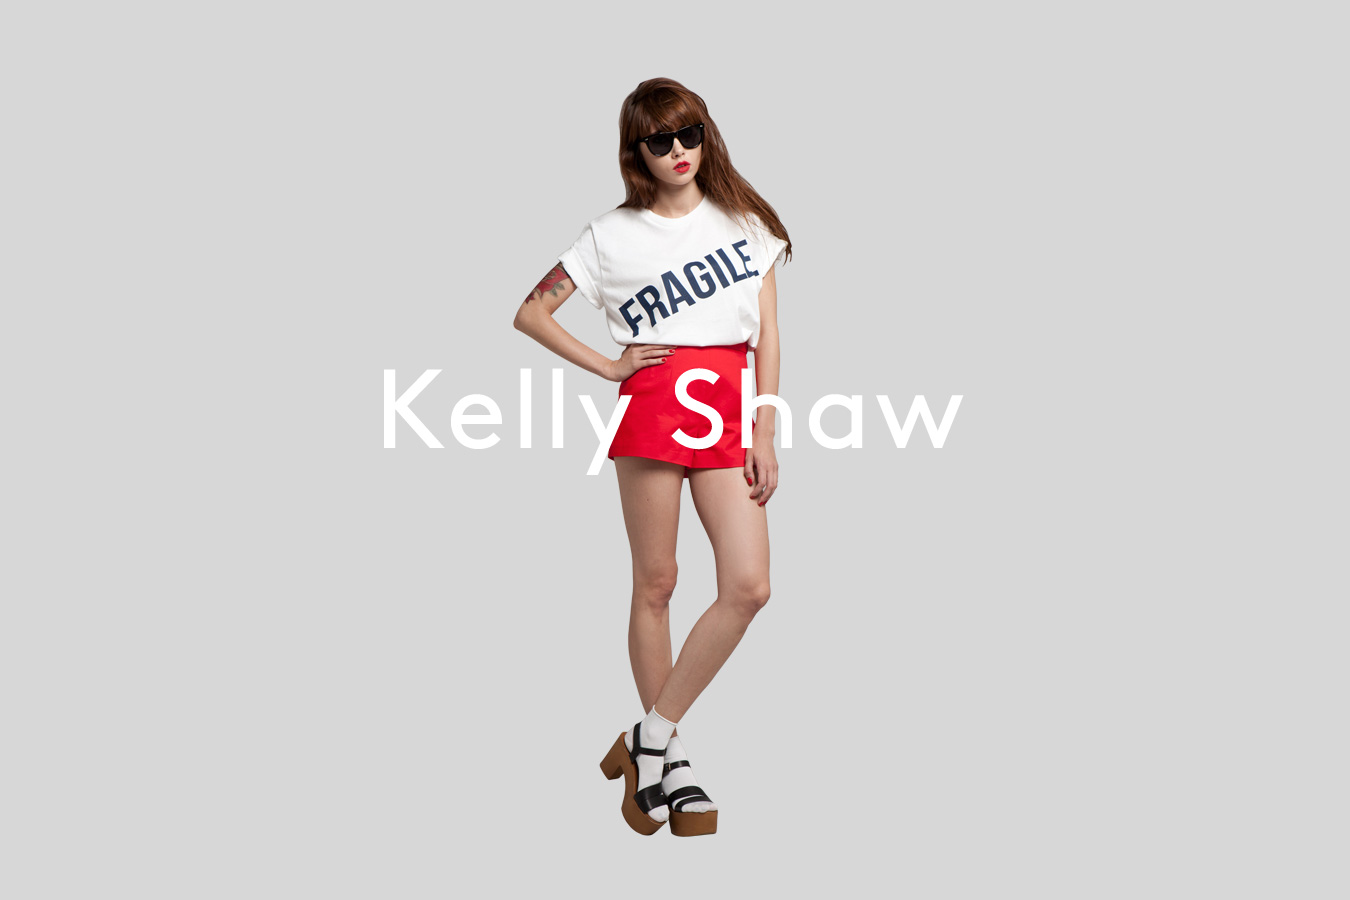 Jordan Taylor C - Designer Spotlight: Kelly Shaw